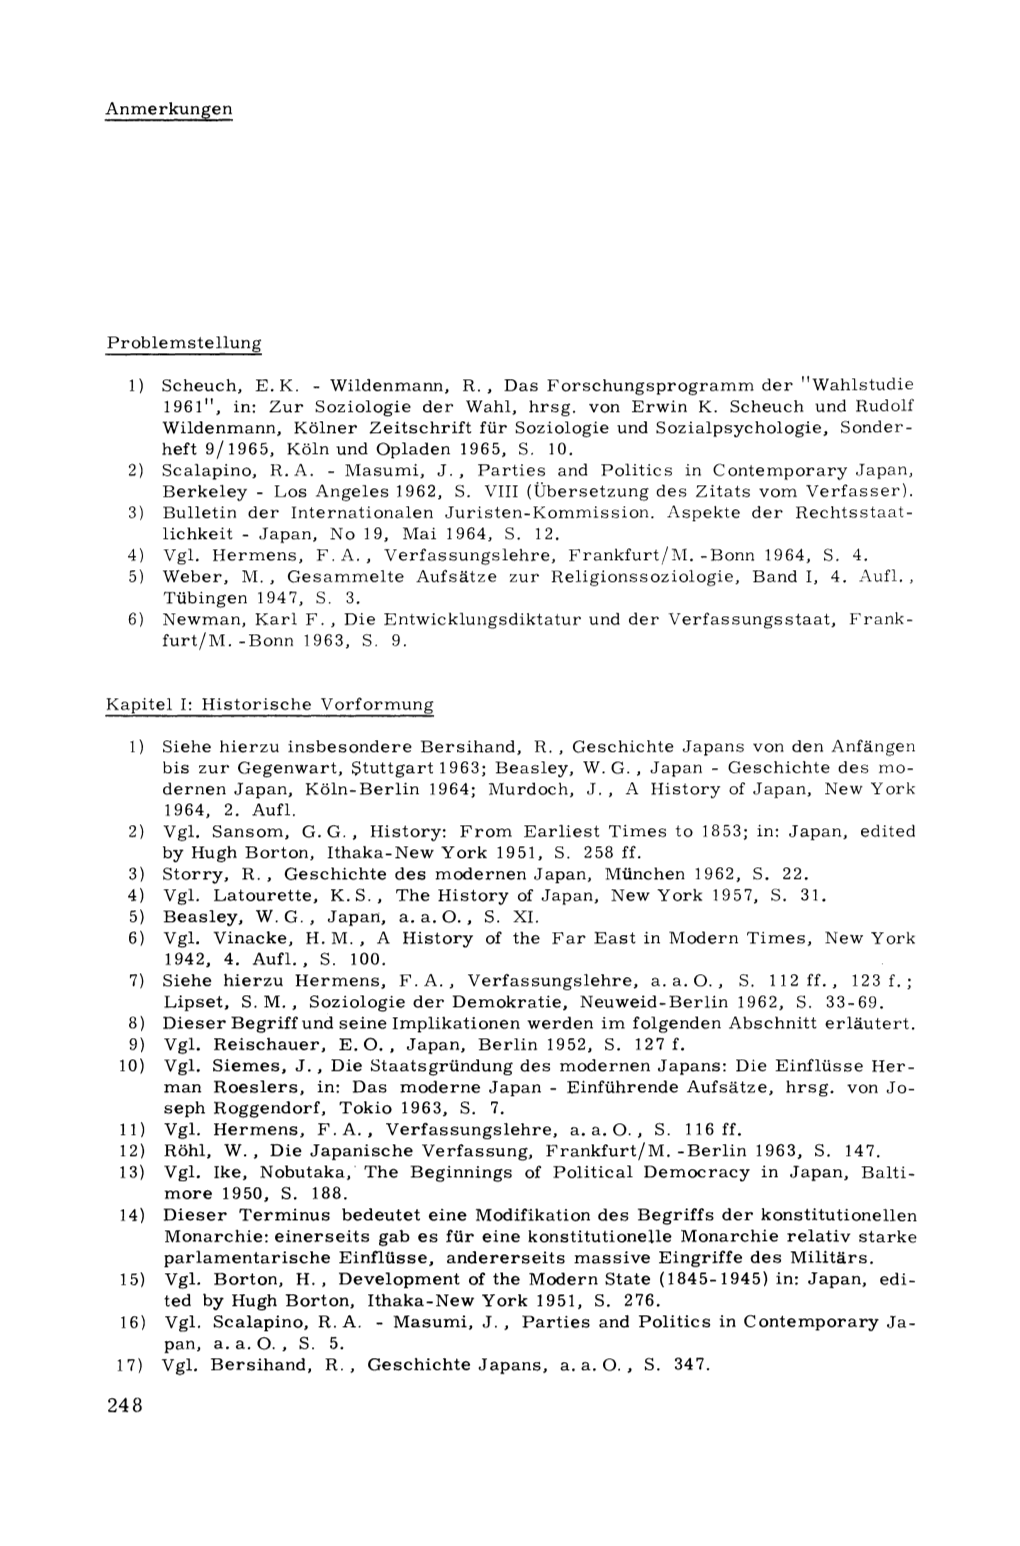 Wildenmann, R., Das Forschungsprogramm Der "Wahlstudie 1961", In: Zur Soziologie Der Wahl, Hrsg